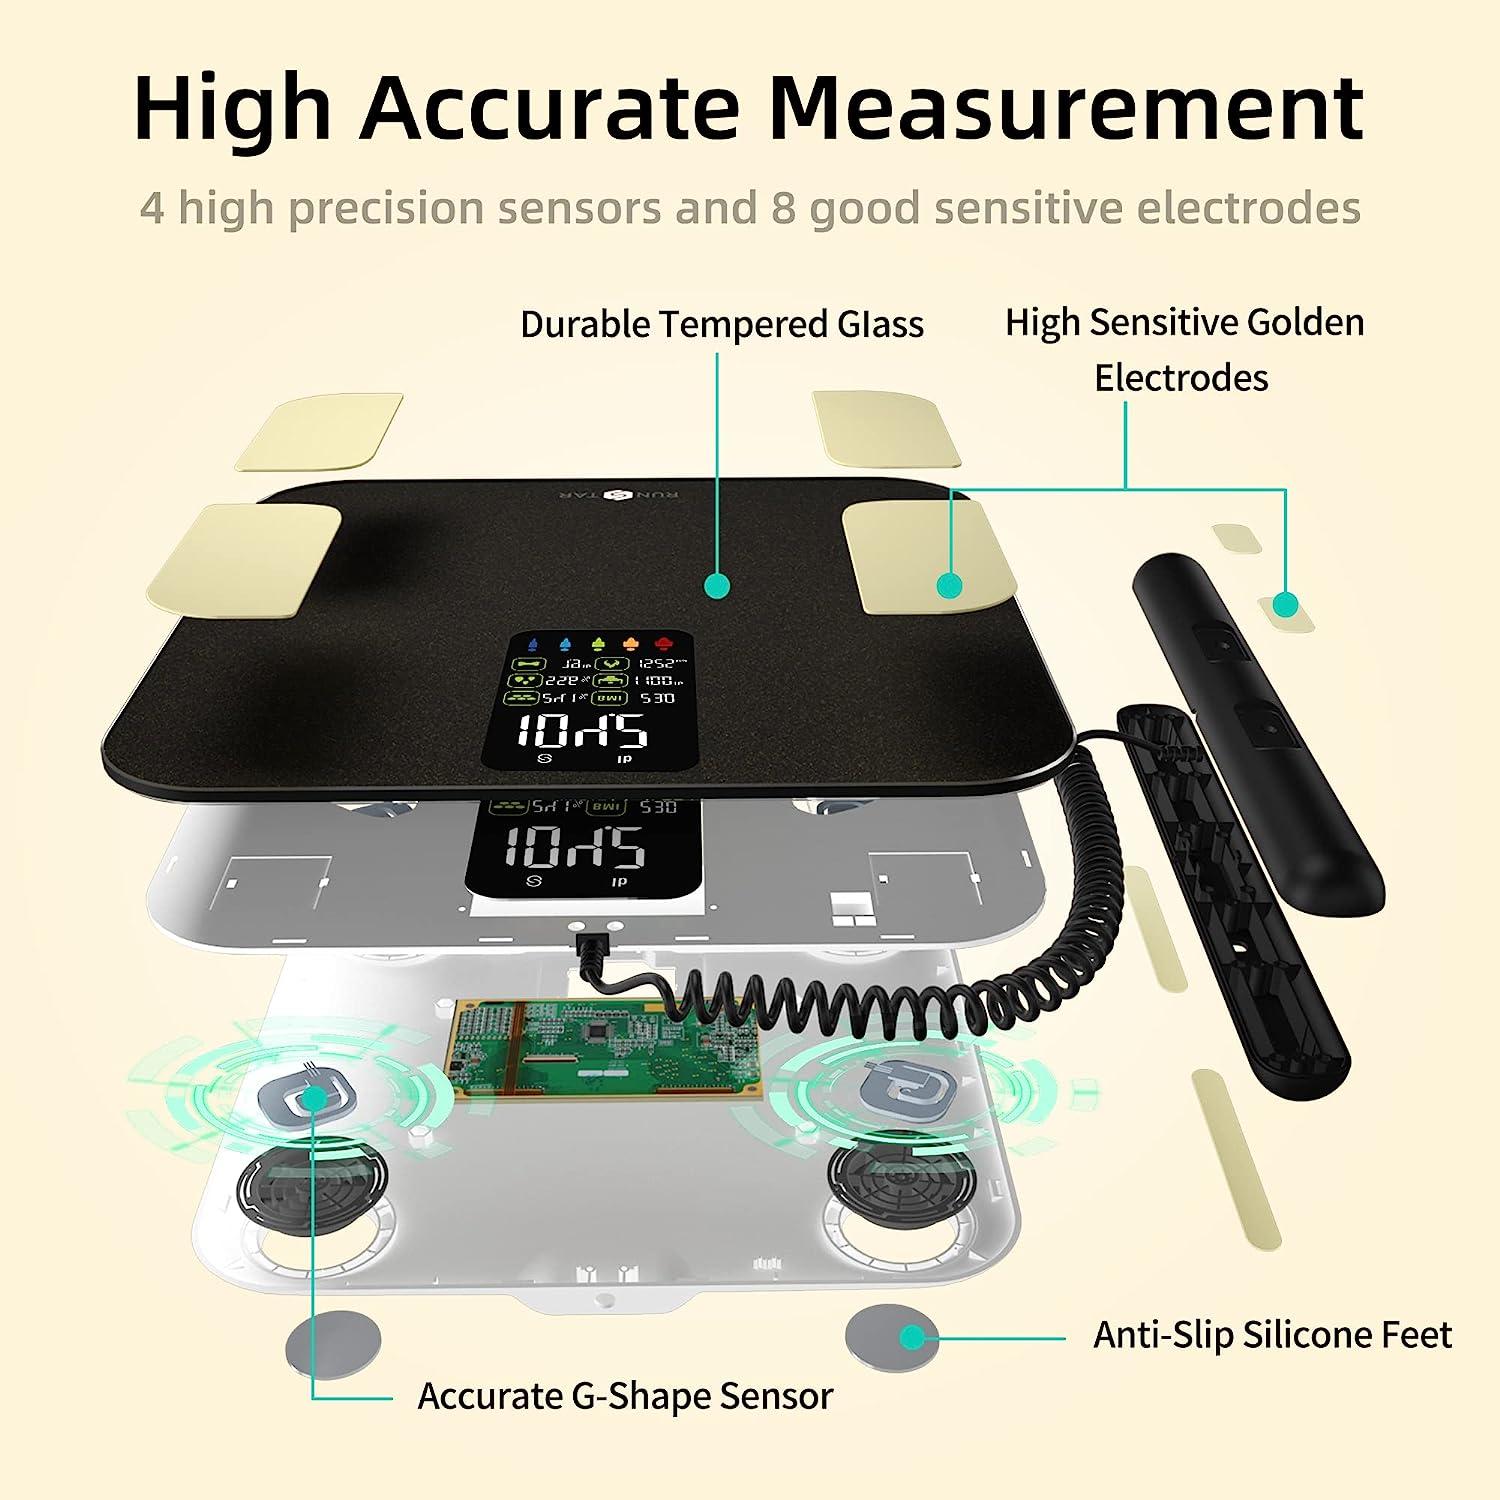 RunSTAR Smart Scale for Body Weight, Digital Bathroom Scale BMI